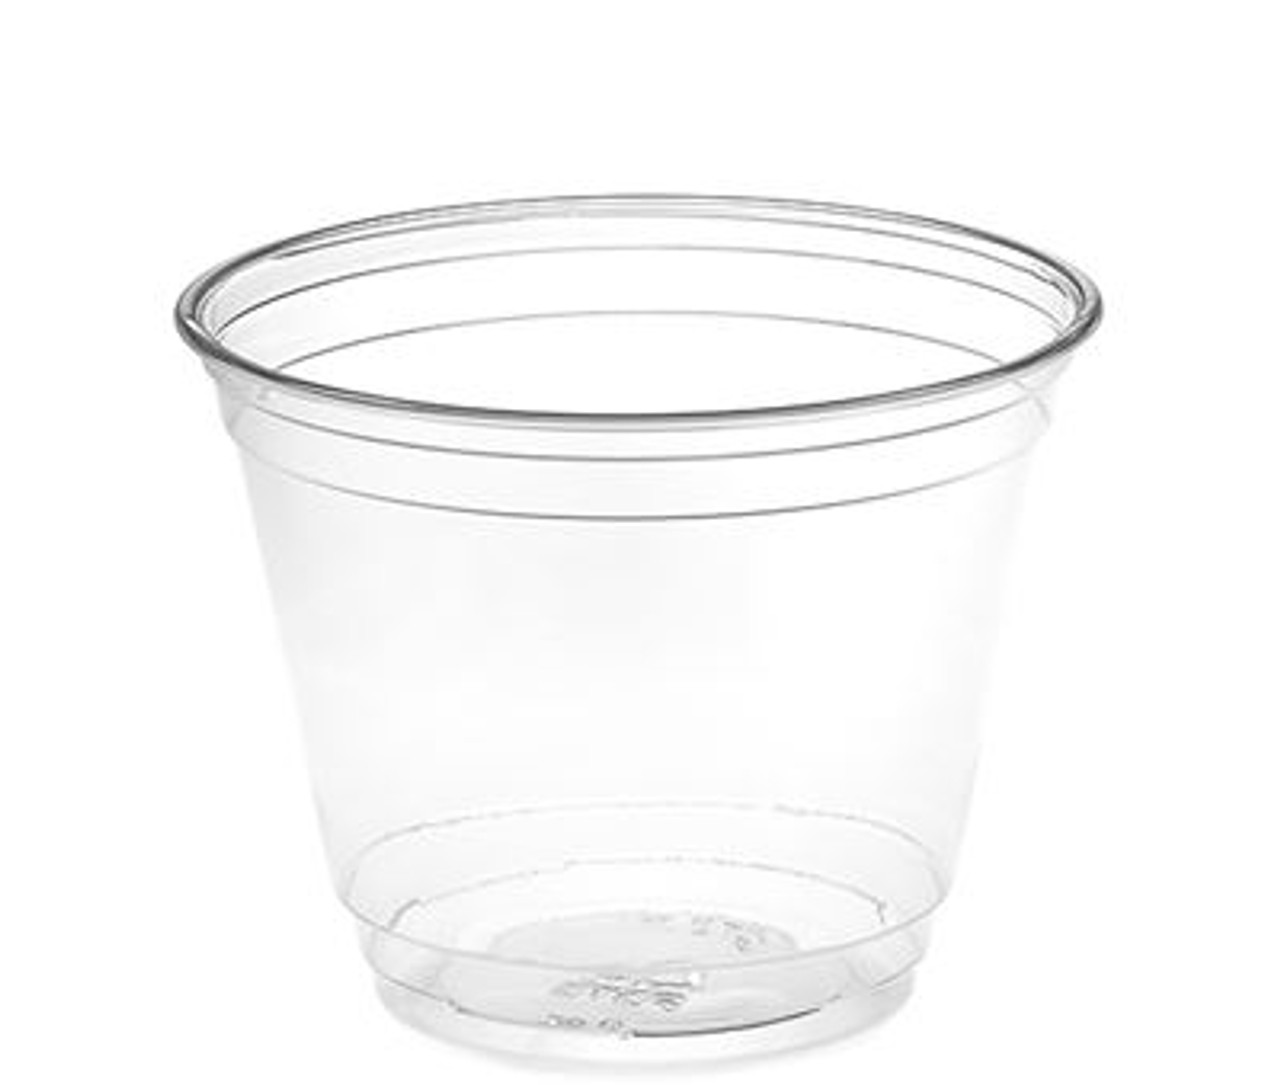 9 oz Clear PET Plastic Cups, 92mm (1000/Case)